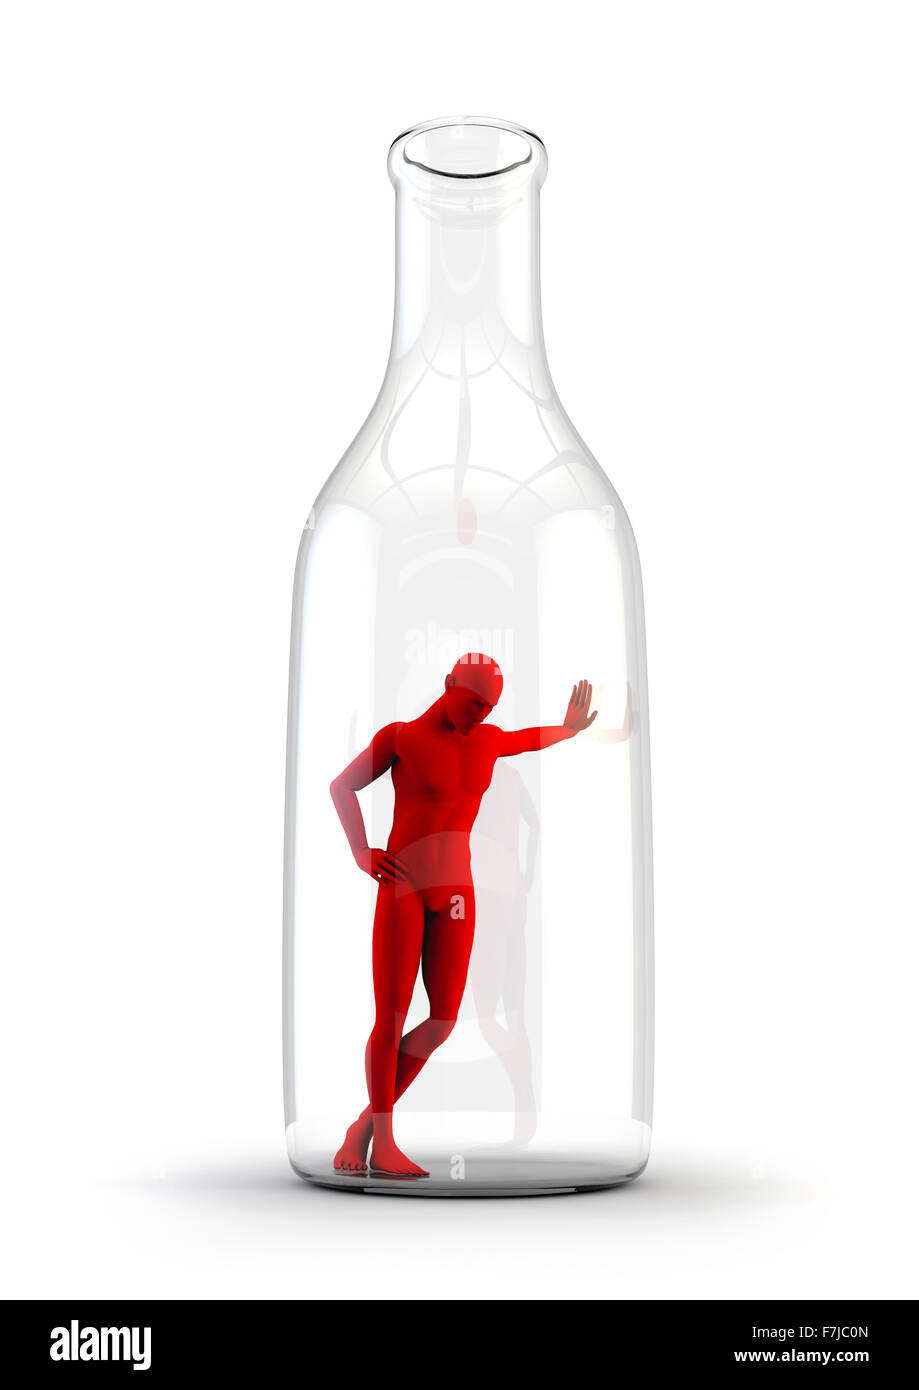 Leben in der Flasche / Alkoholismus Konzept mit traurigen männliche Figur lehnt sich an das Innere einer Flasche Stockfoto